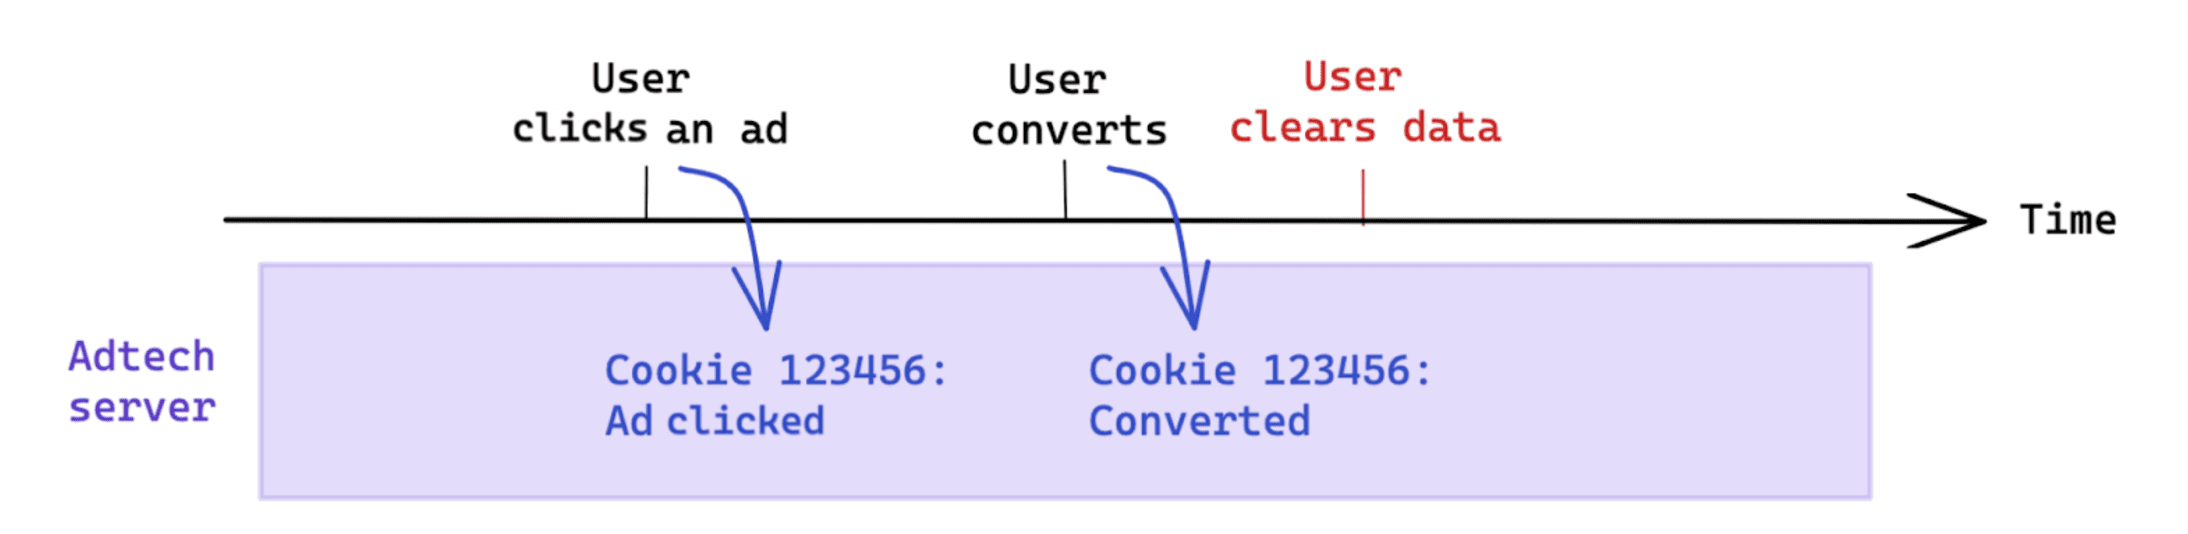 转化后，用户发起的数据清除不会影响基于 Cookie 的衡量。